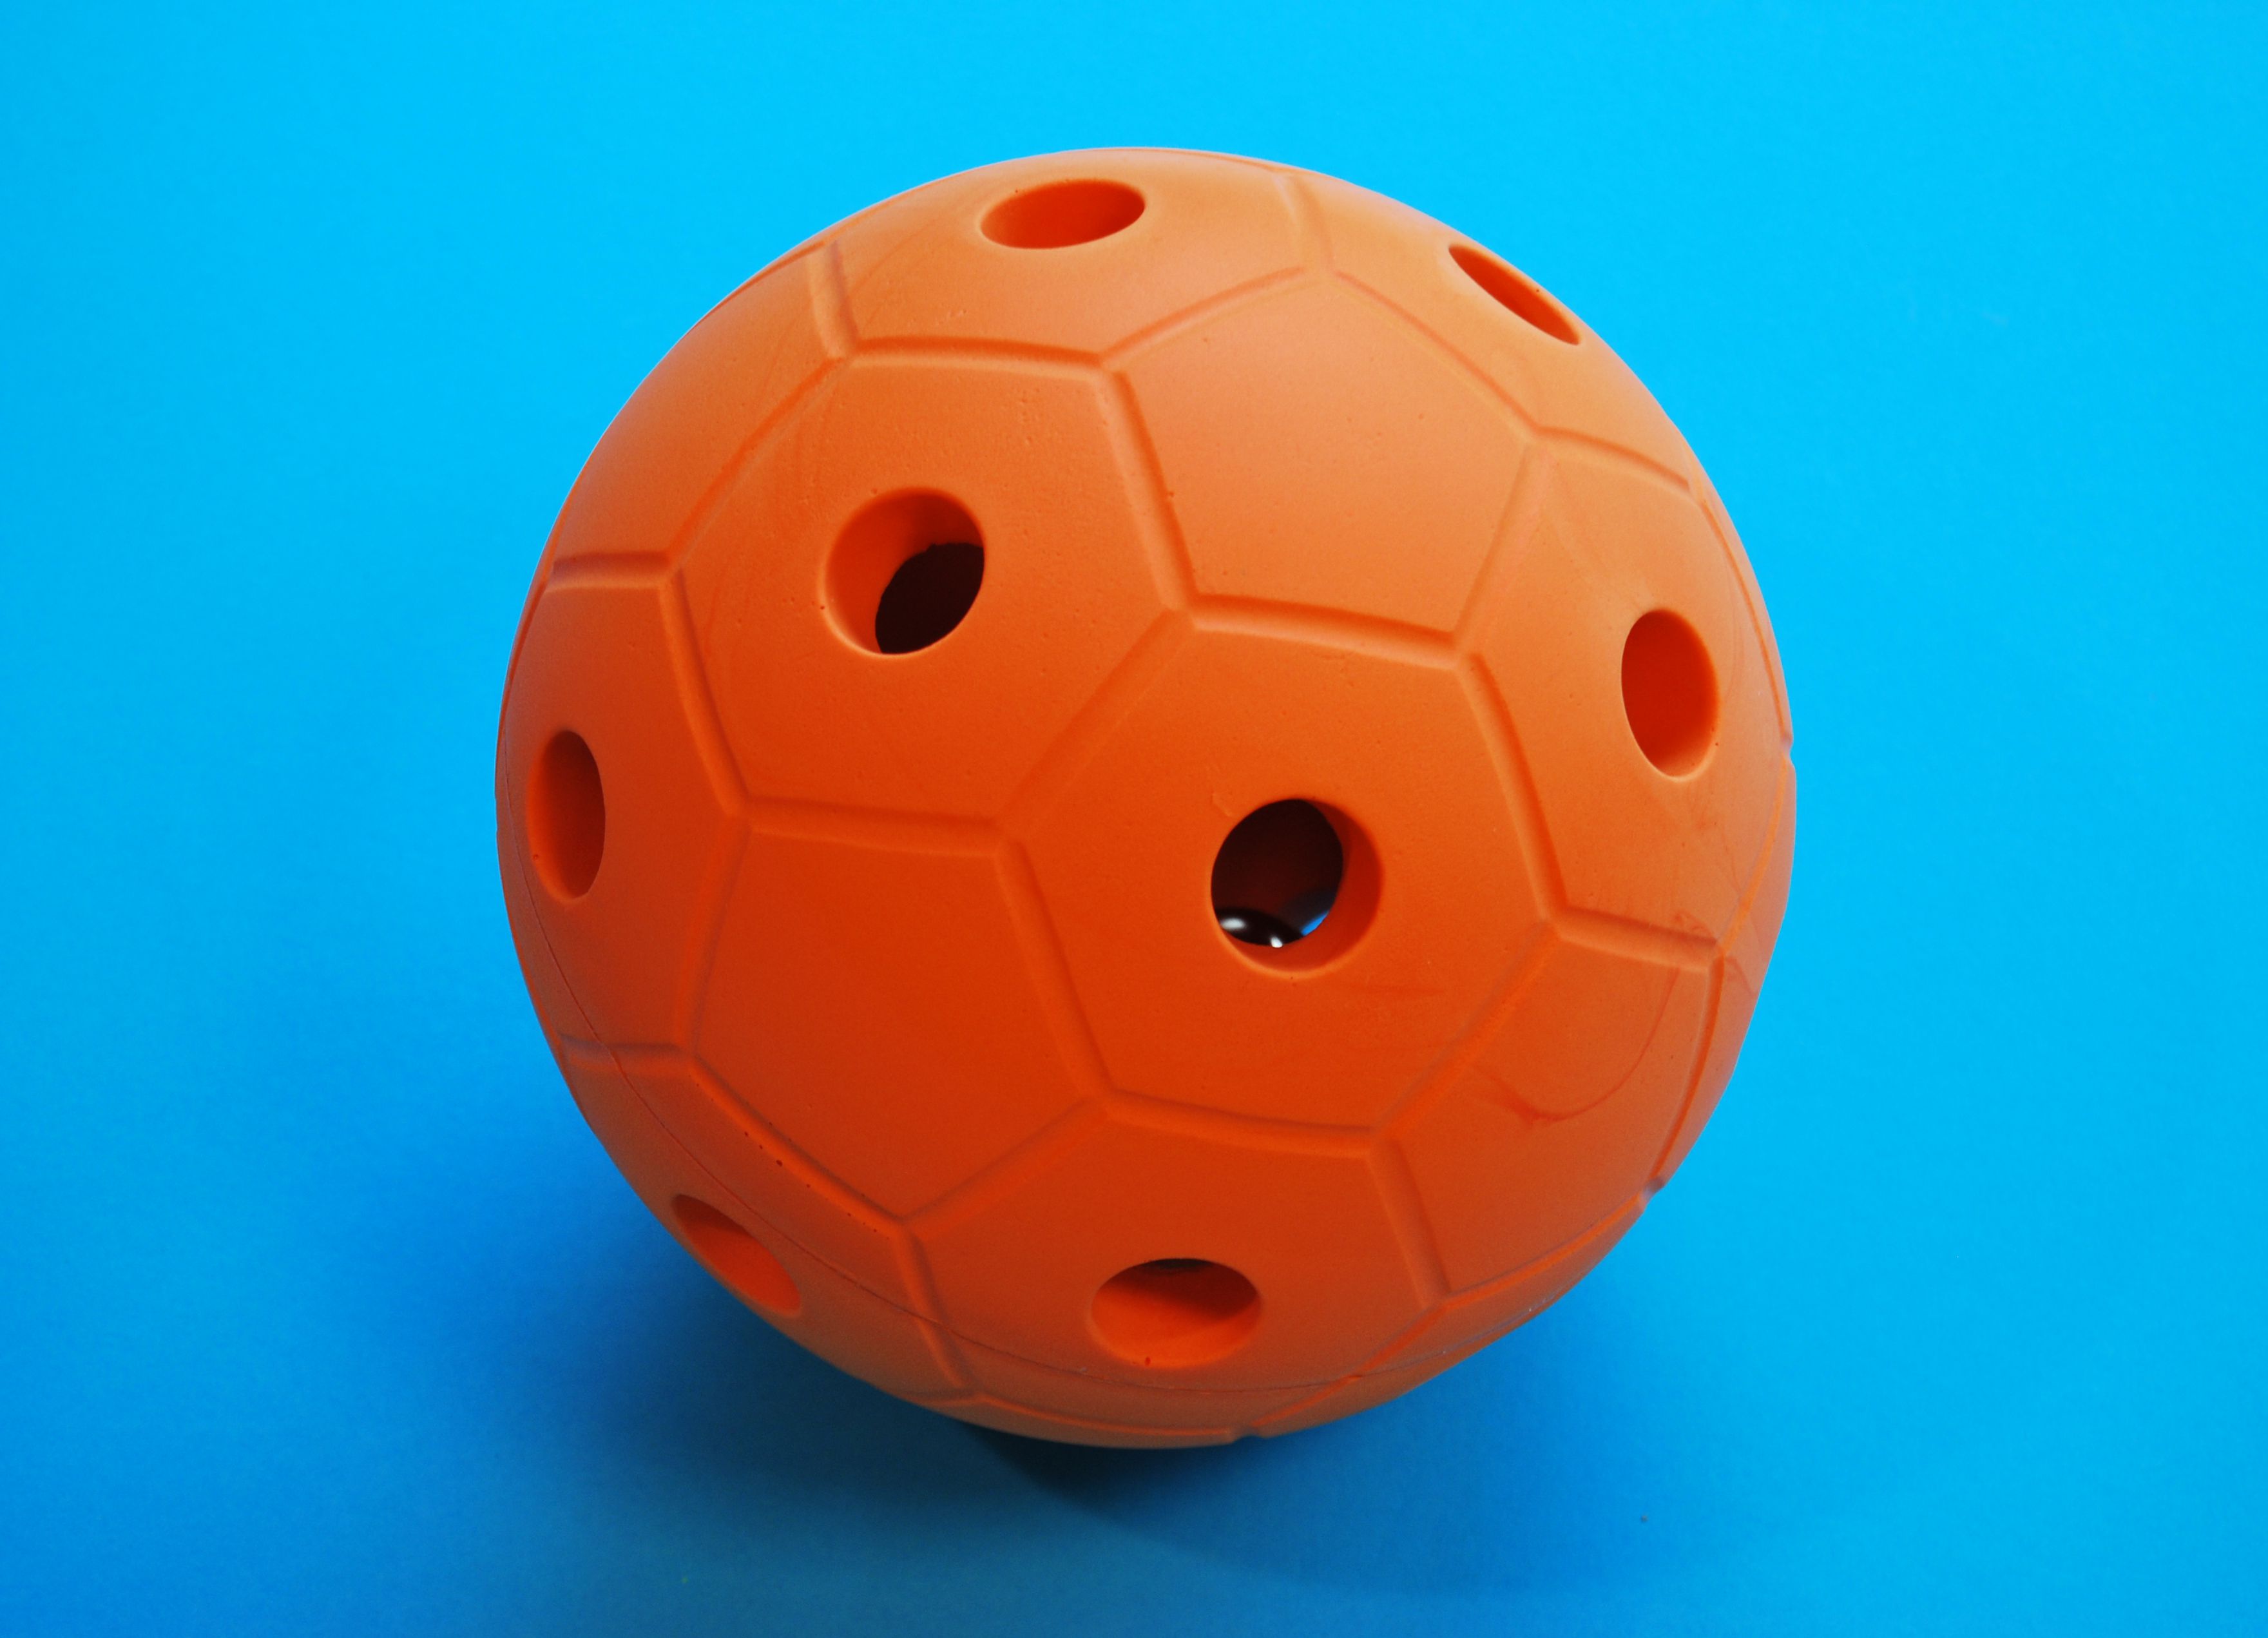 Image de présentation du jeu Ballon sonore orange - cliquez pour agrandir